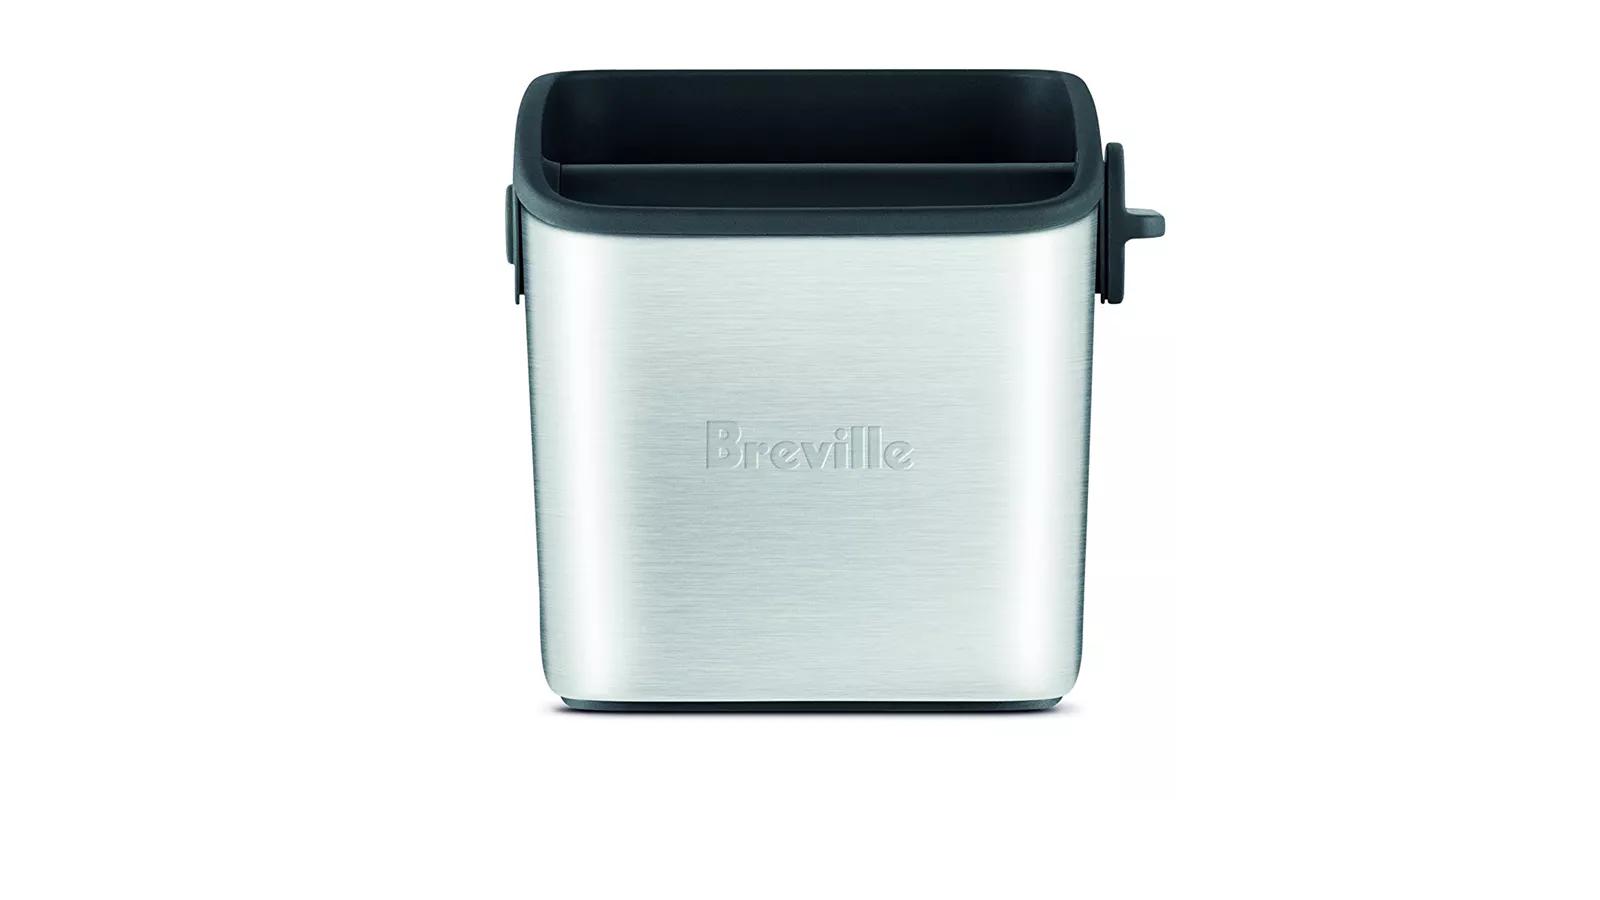 Breville BES001 Mini Knock Box